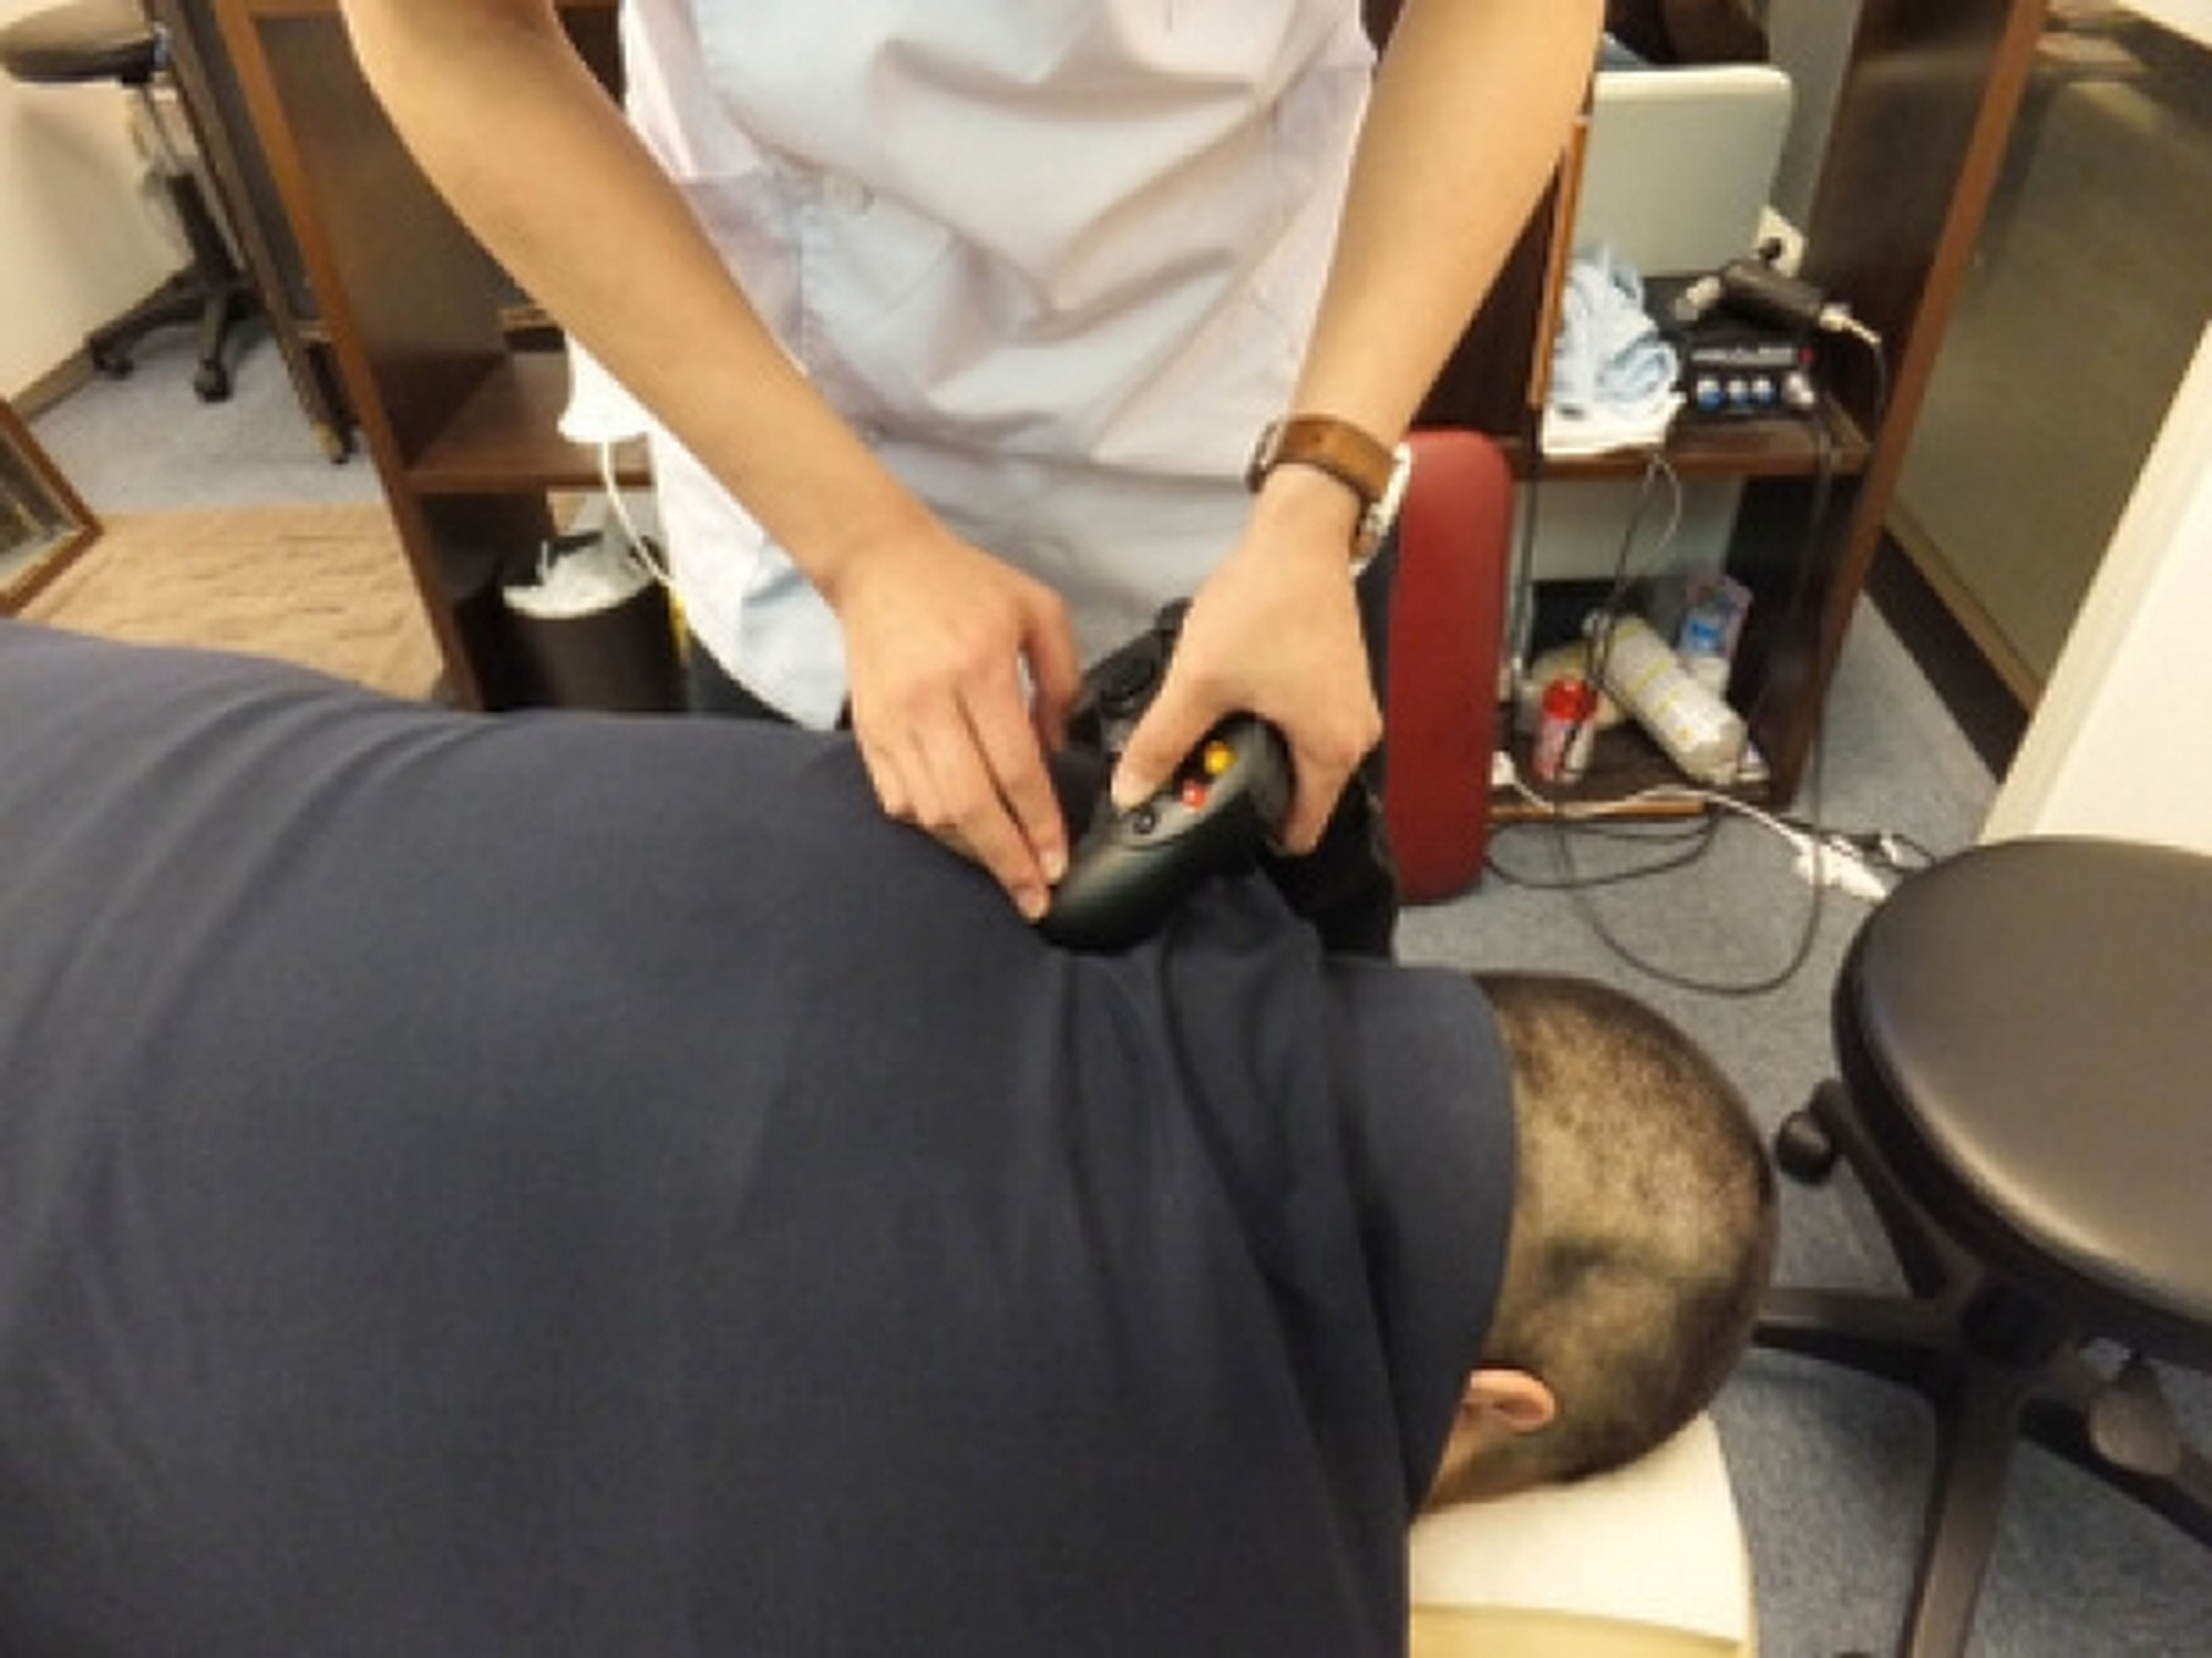 Una clínica japonesa da masajes con mandos de consola